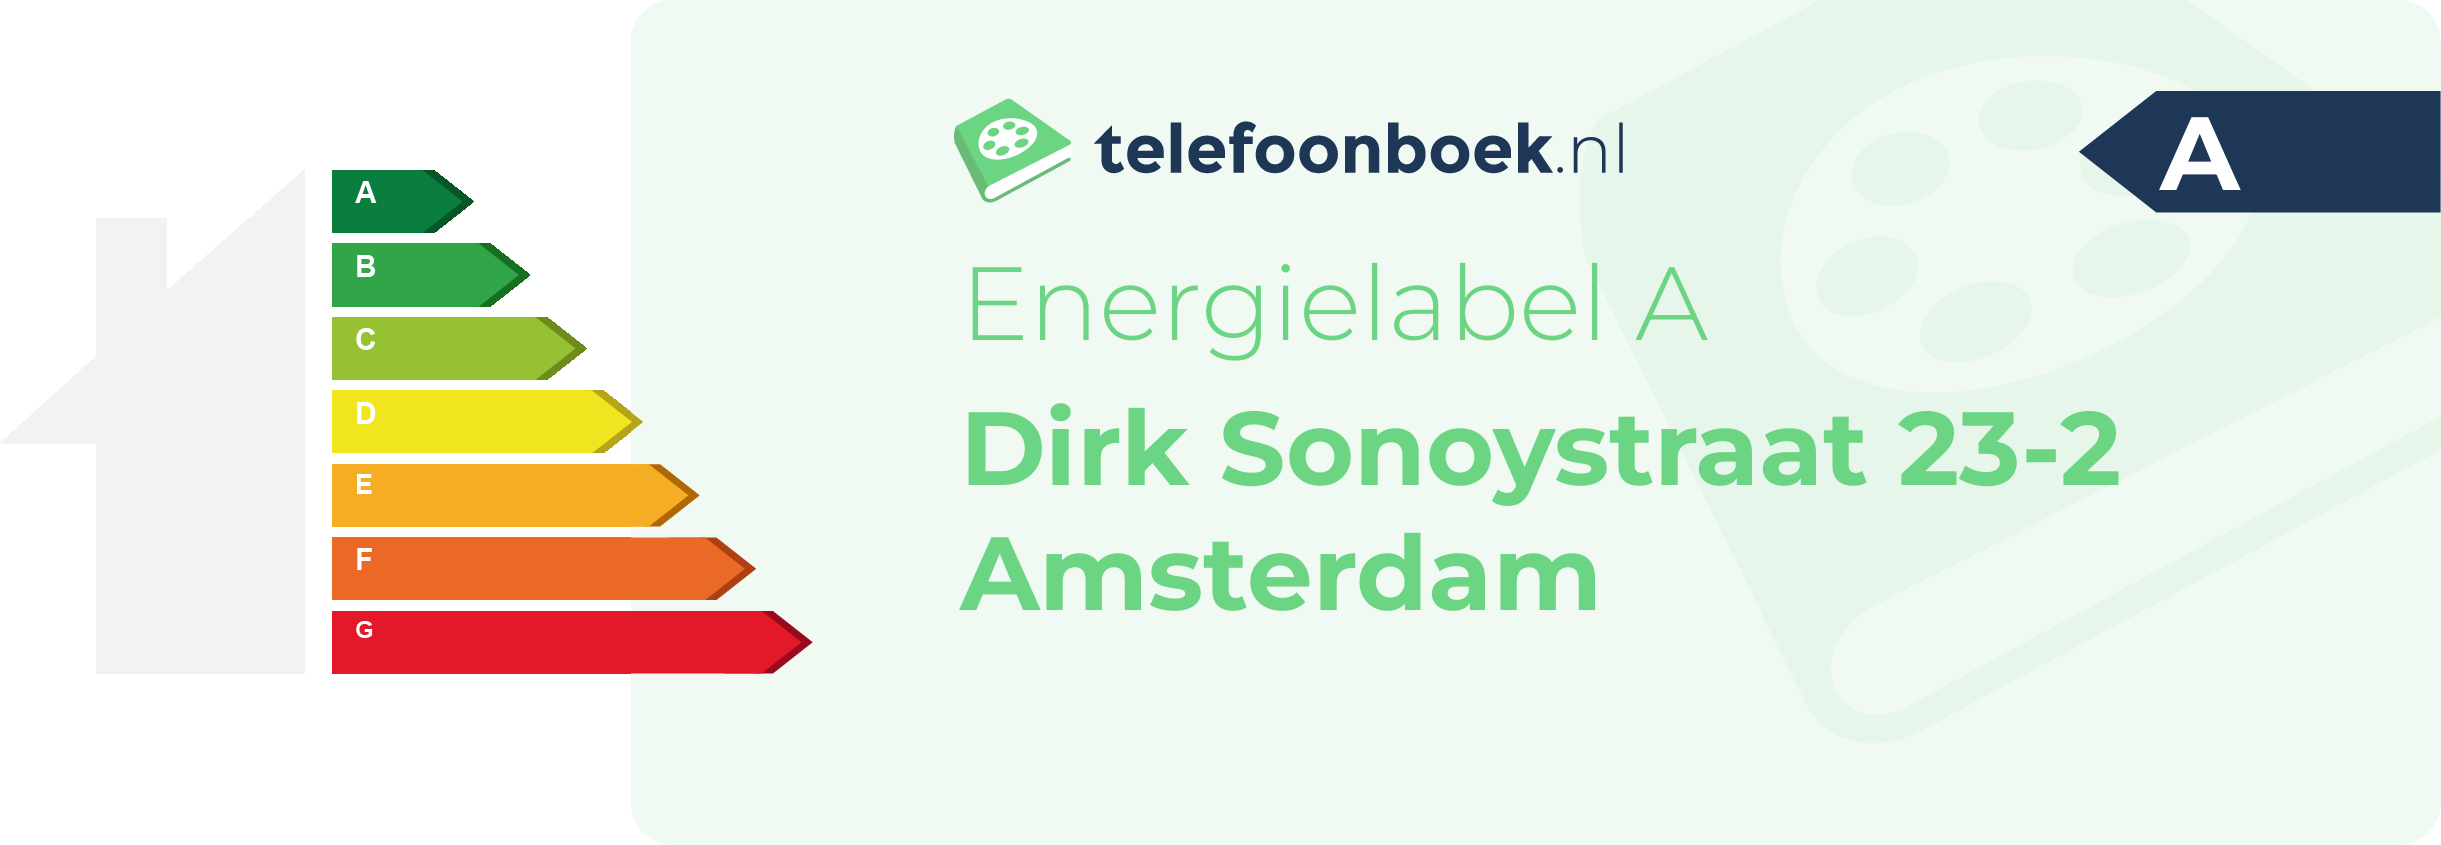 Energielabel Dirk Sonoystraat 23-2 Amsterdam